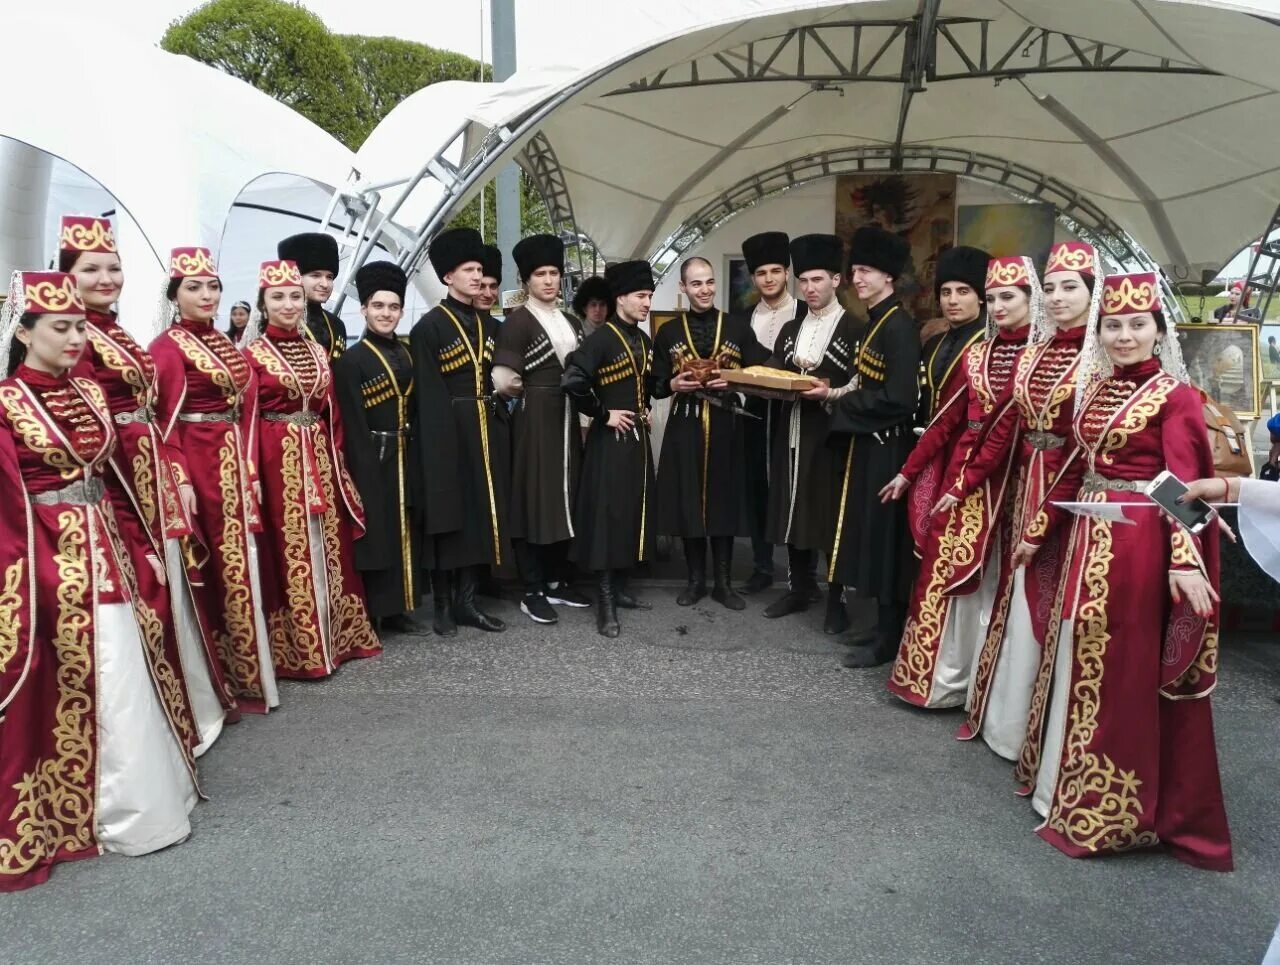 Много осетин. Осетия и осетины. Свадьба северных осетин. Осетинская свадьба. Грузинское национальное платье.